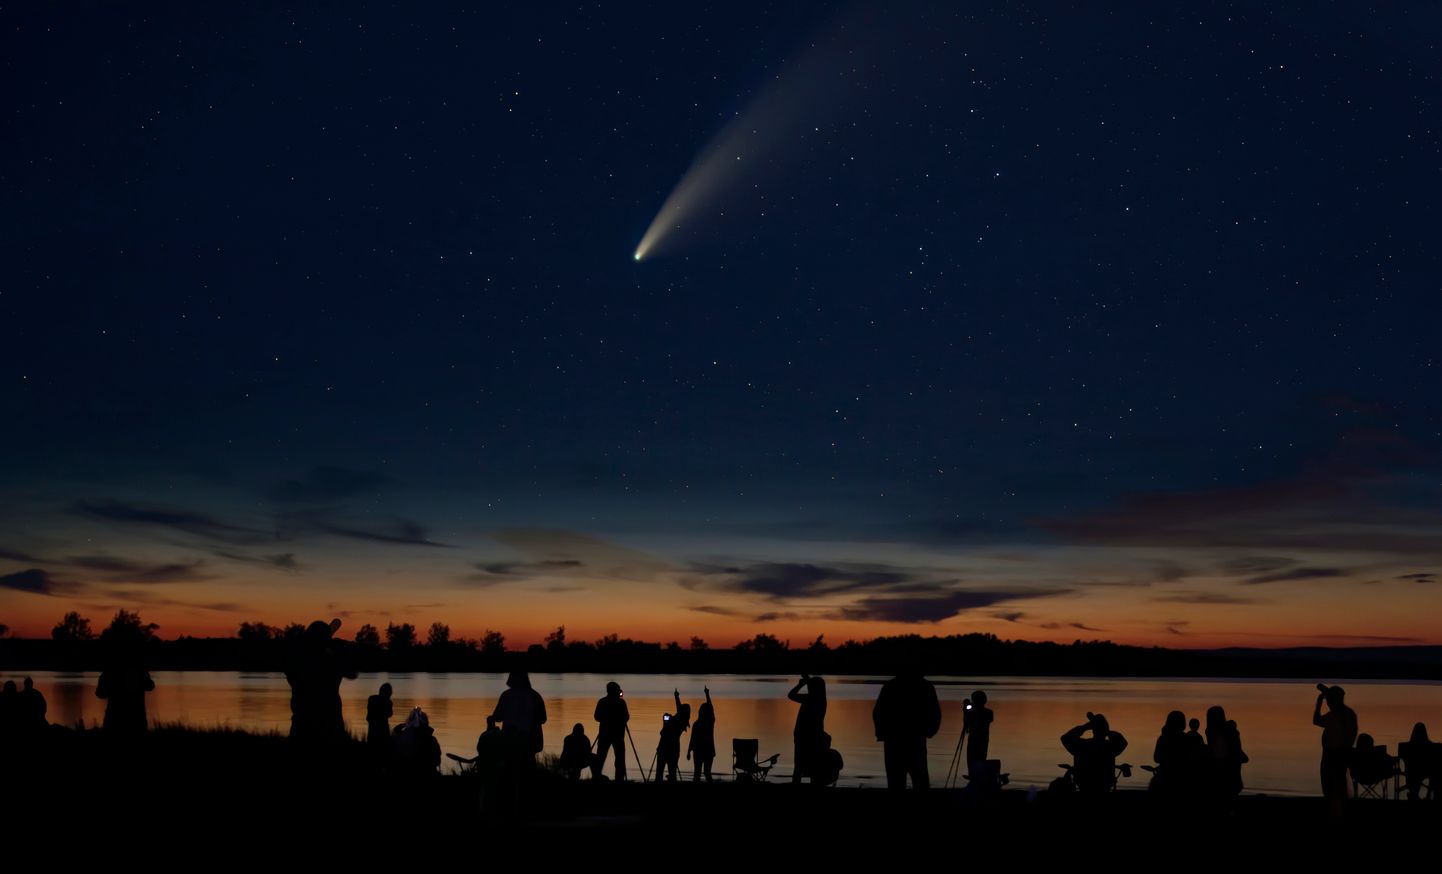 Inimesed vaatamas ja jäädvustamas komeeti. Pilt on illustreeriv